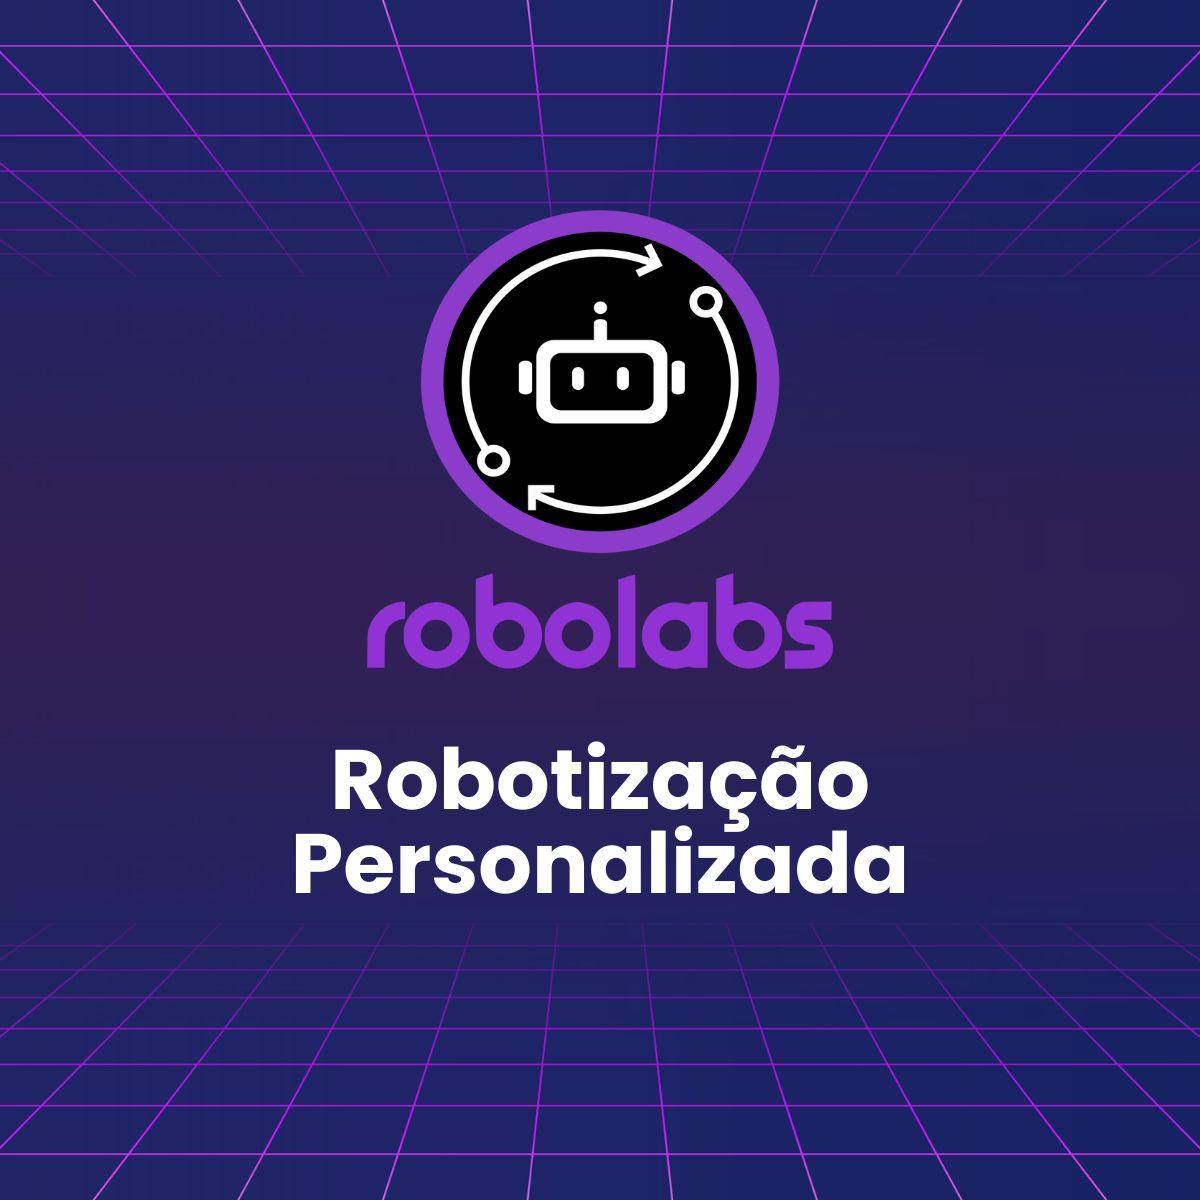 Robotização Personalizada